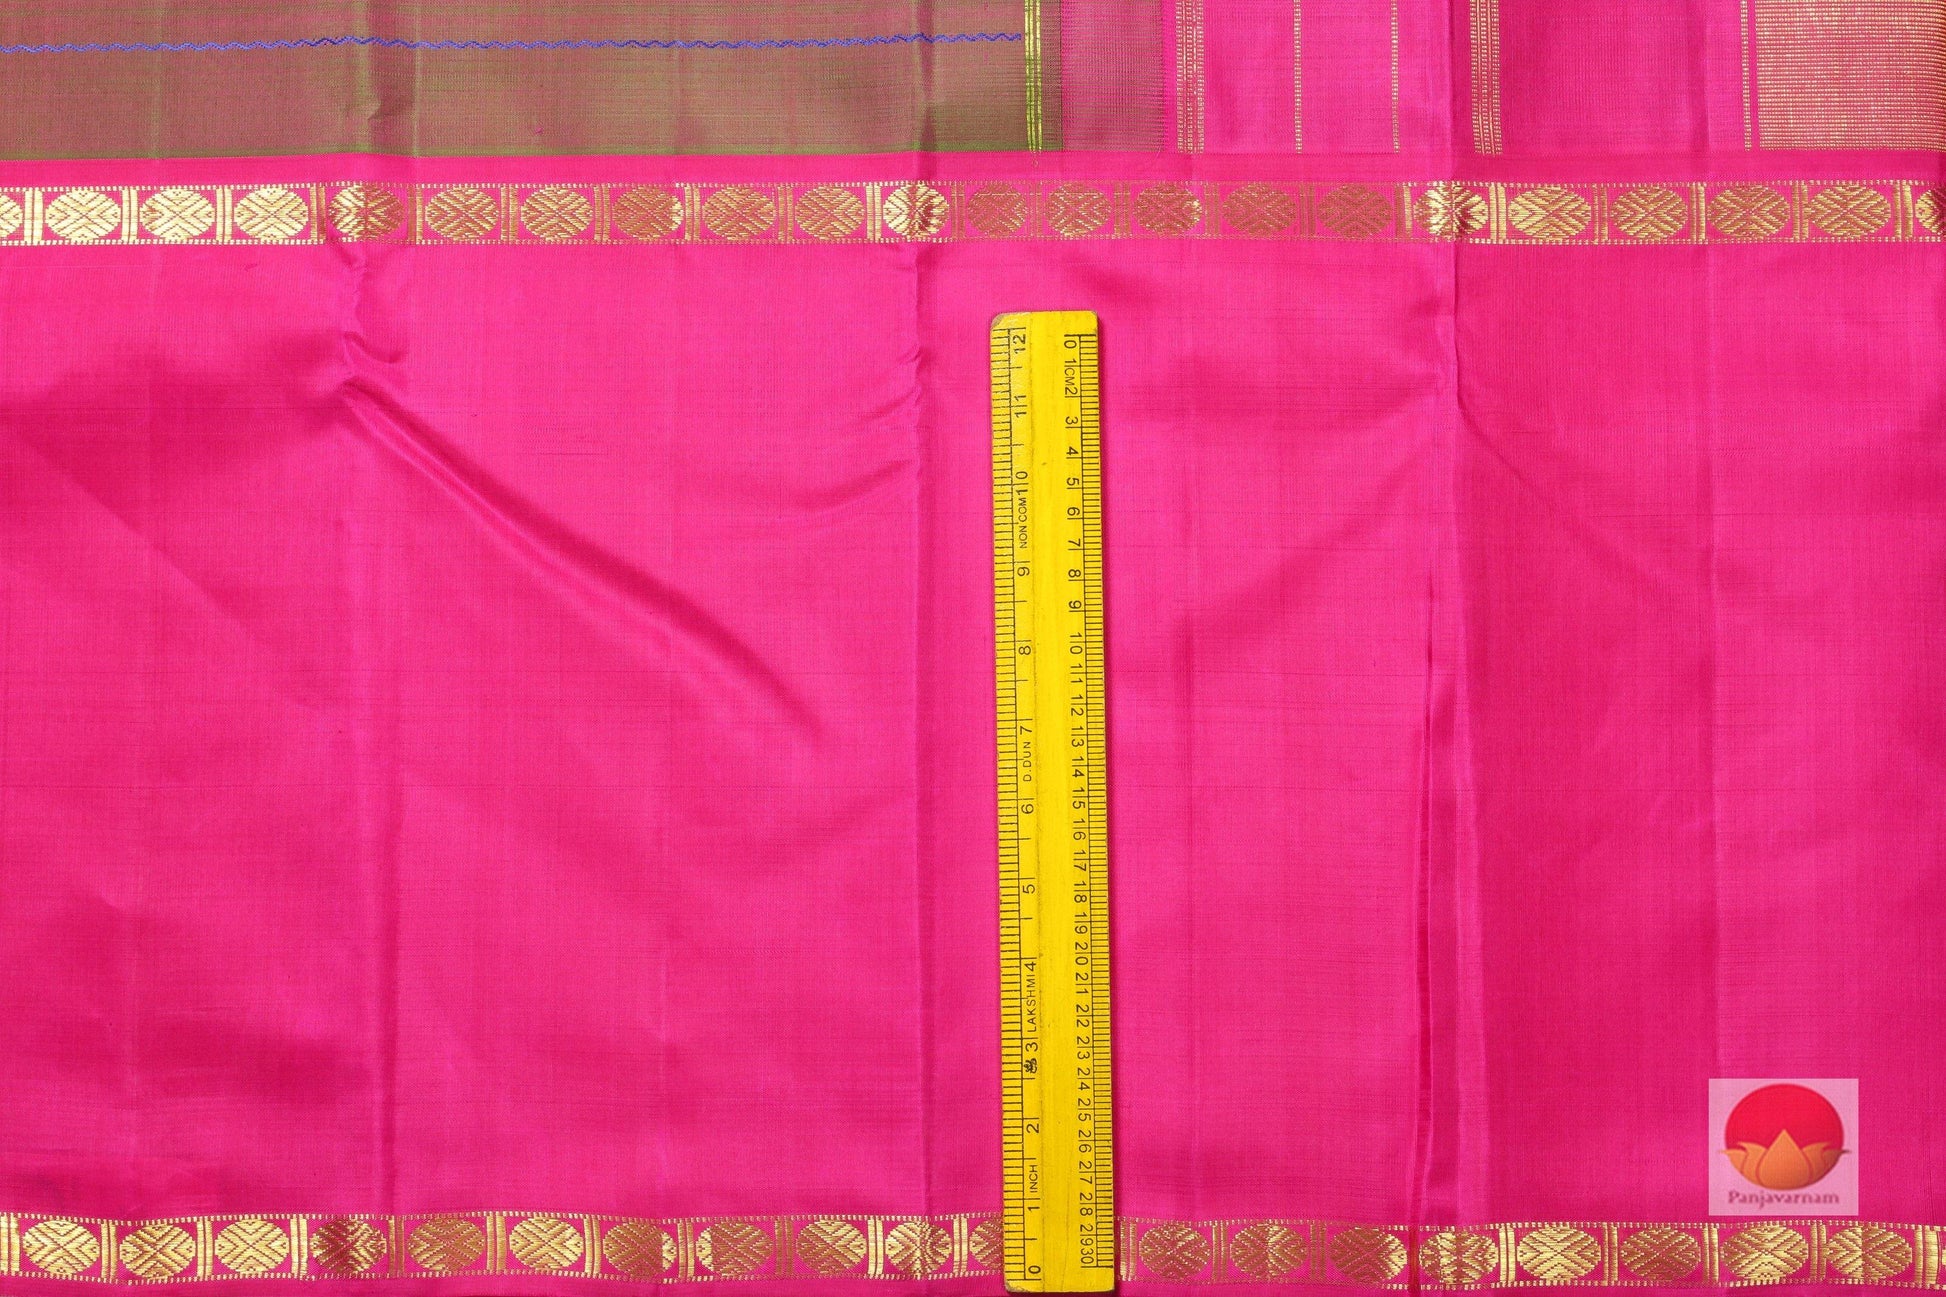 Mubbagam Handwoven Pure Silk Kanjivaram Saree - Veldhari Stripes - PVSM G 55 - Silk Sari - Panjavarnam